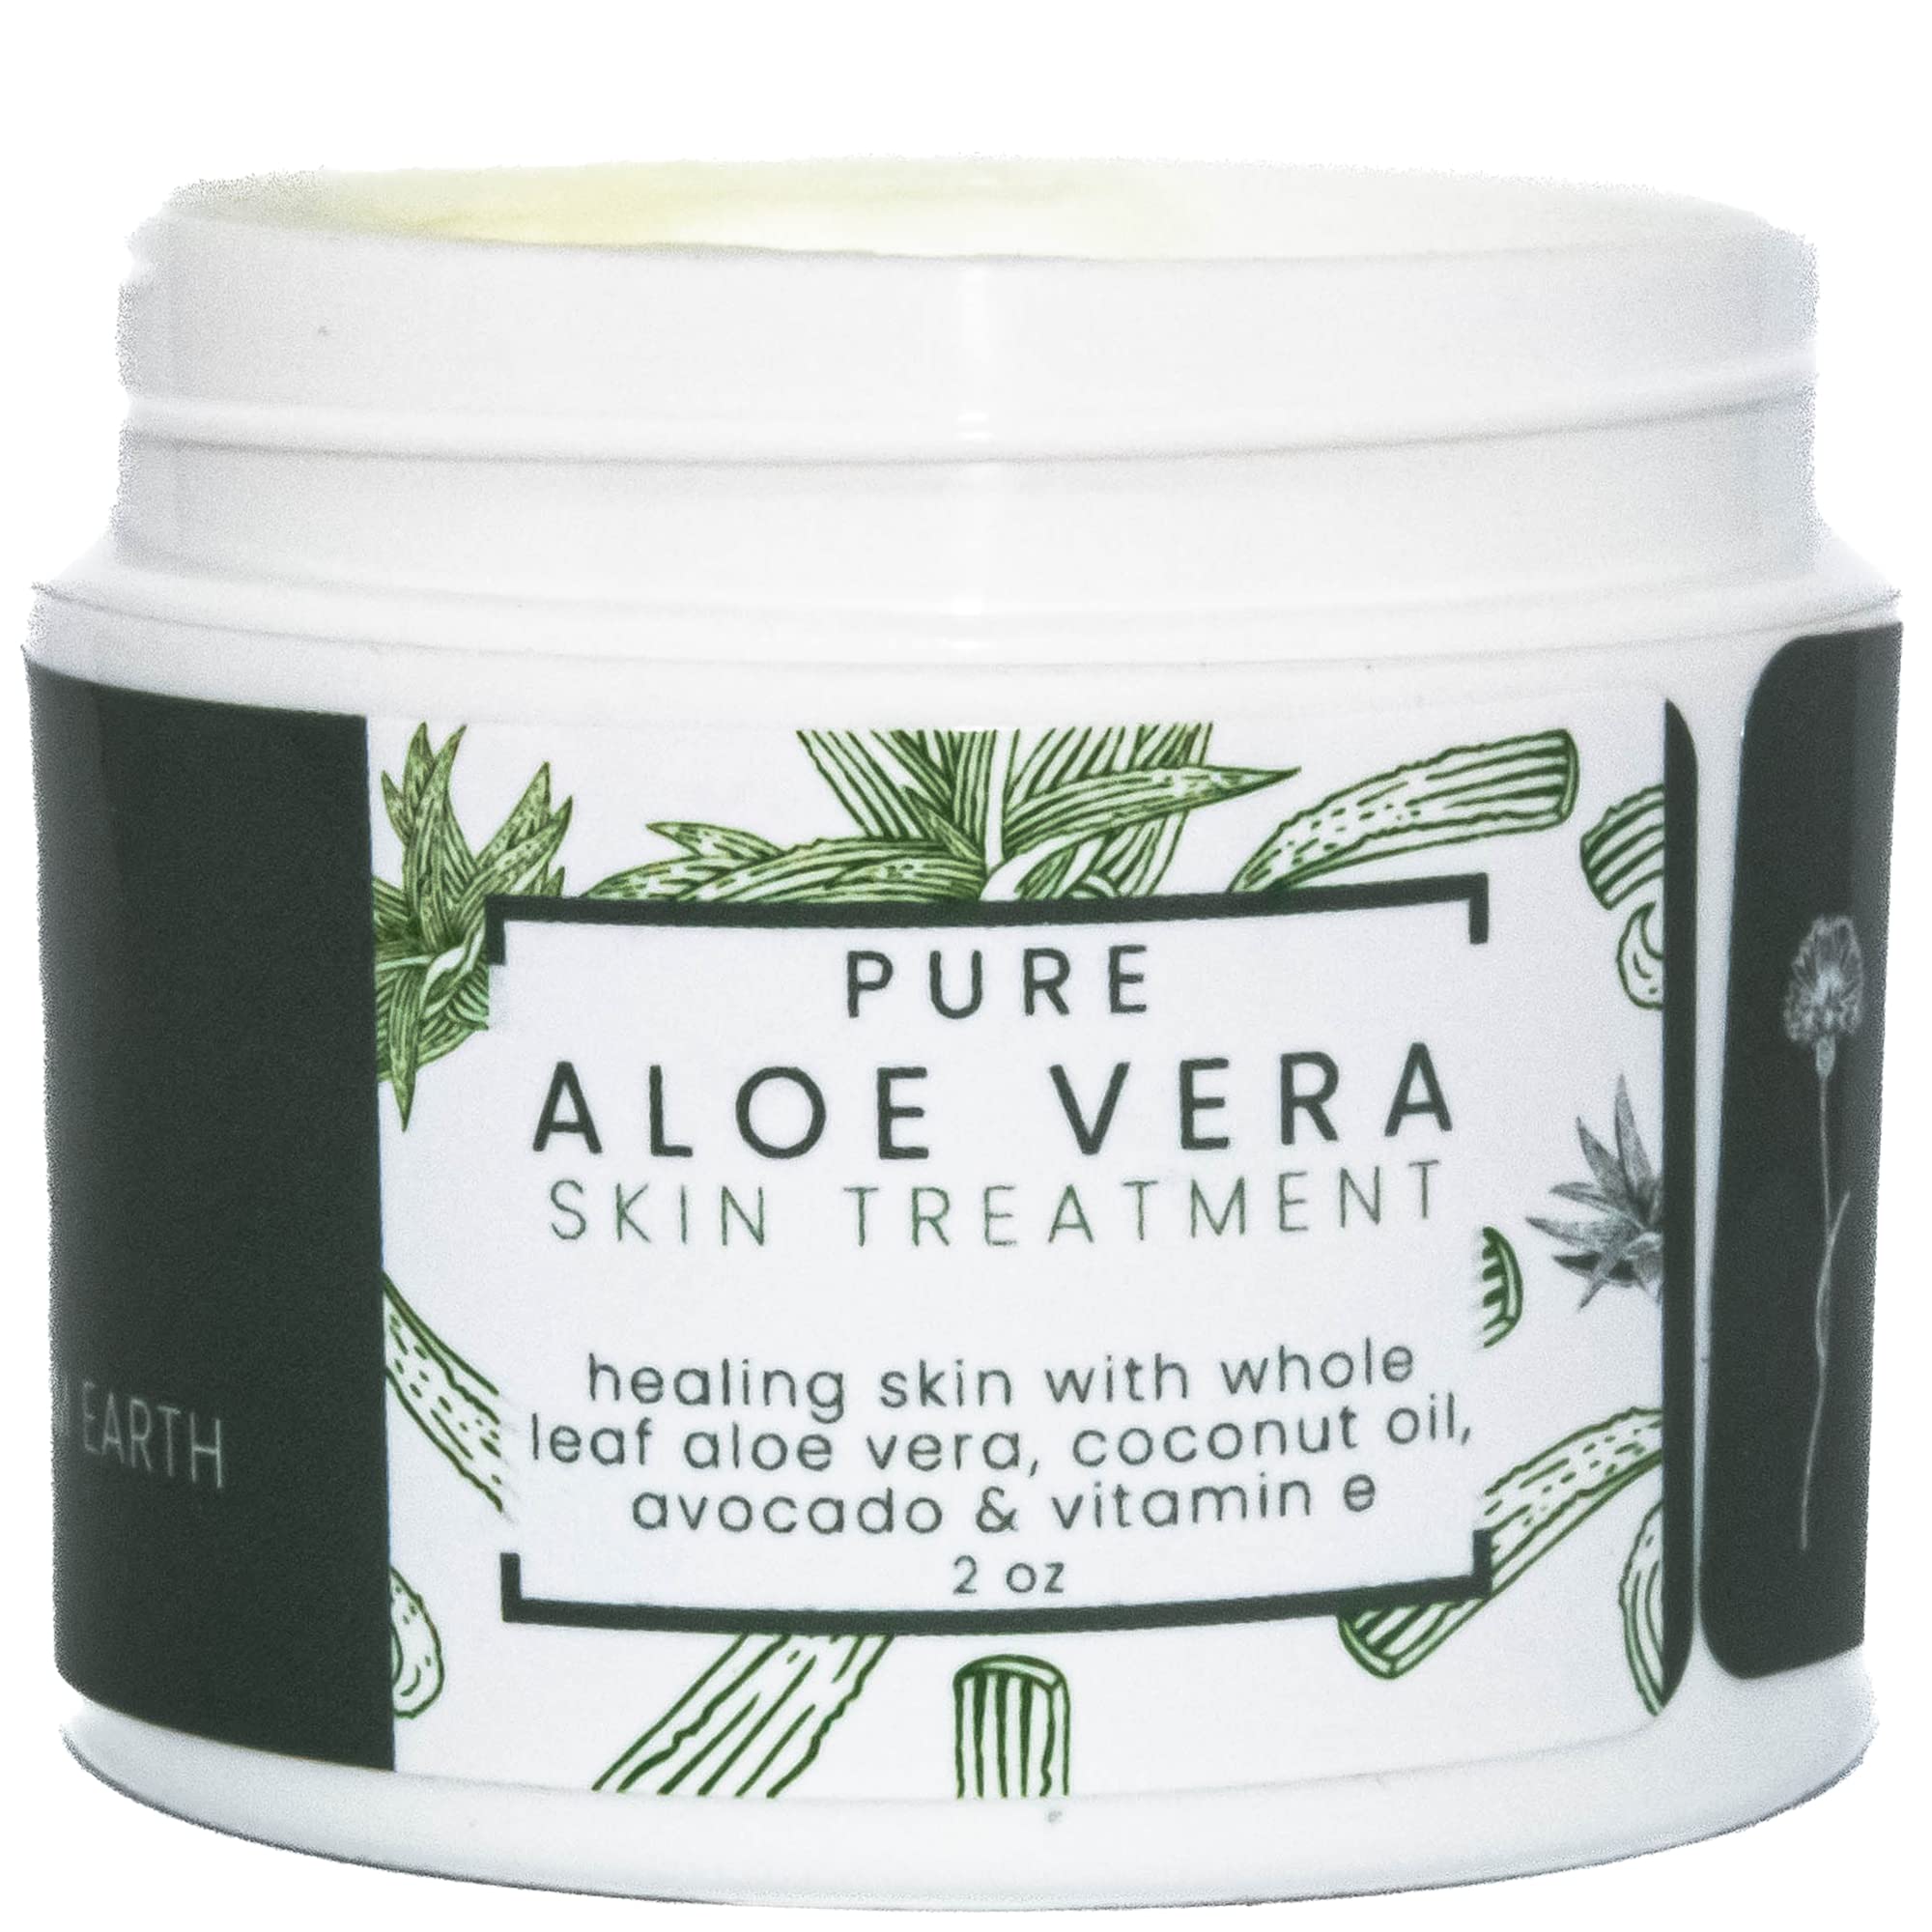 Pure Aloe Vera Treatment with Organic Coconut, Olive Oil & Vitamin E, 2 oz